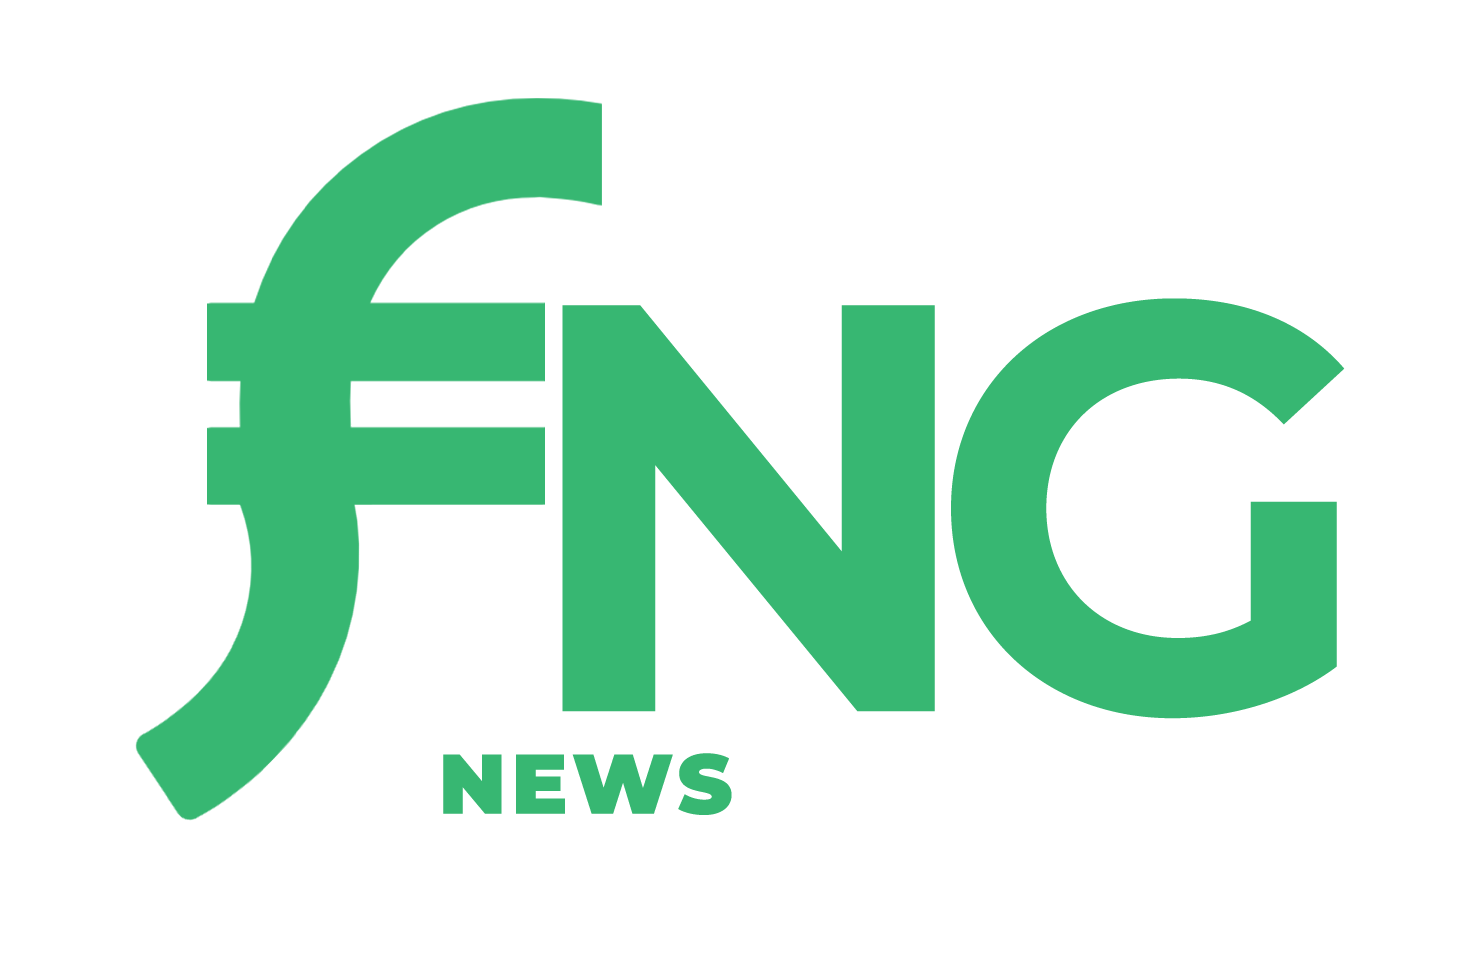 FX News Group